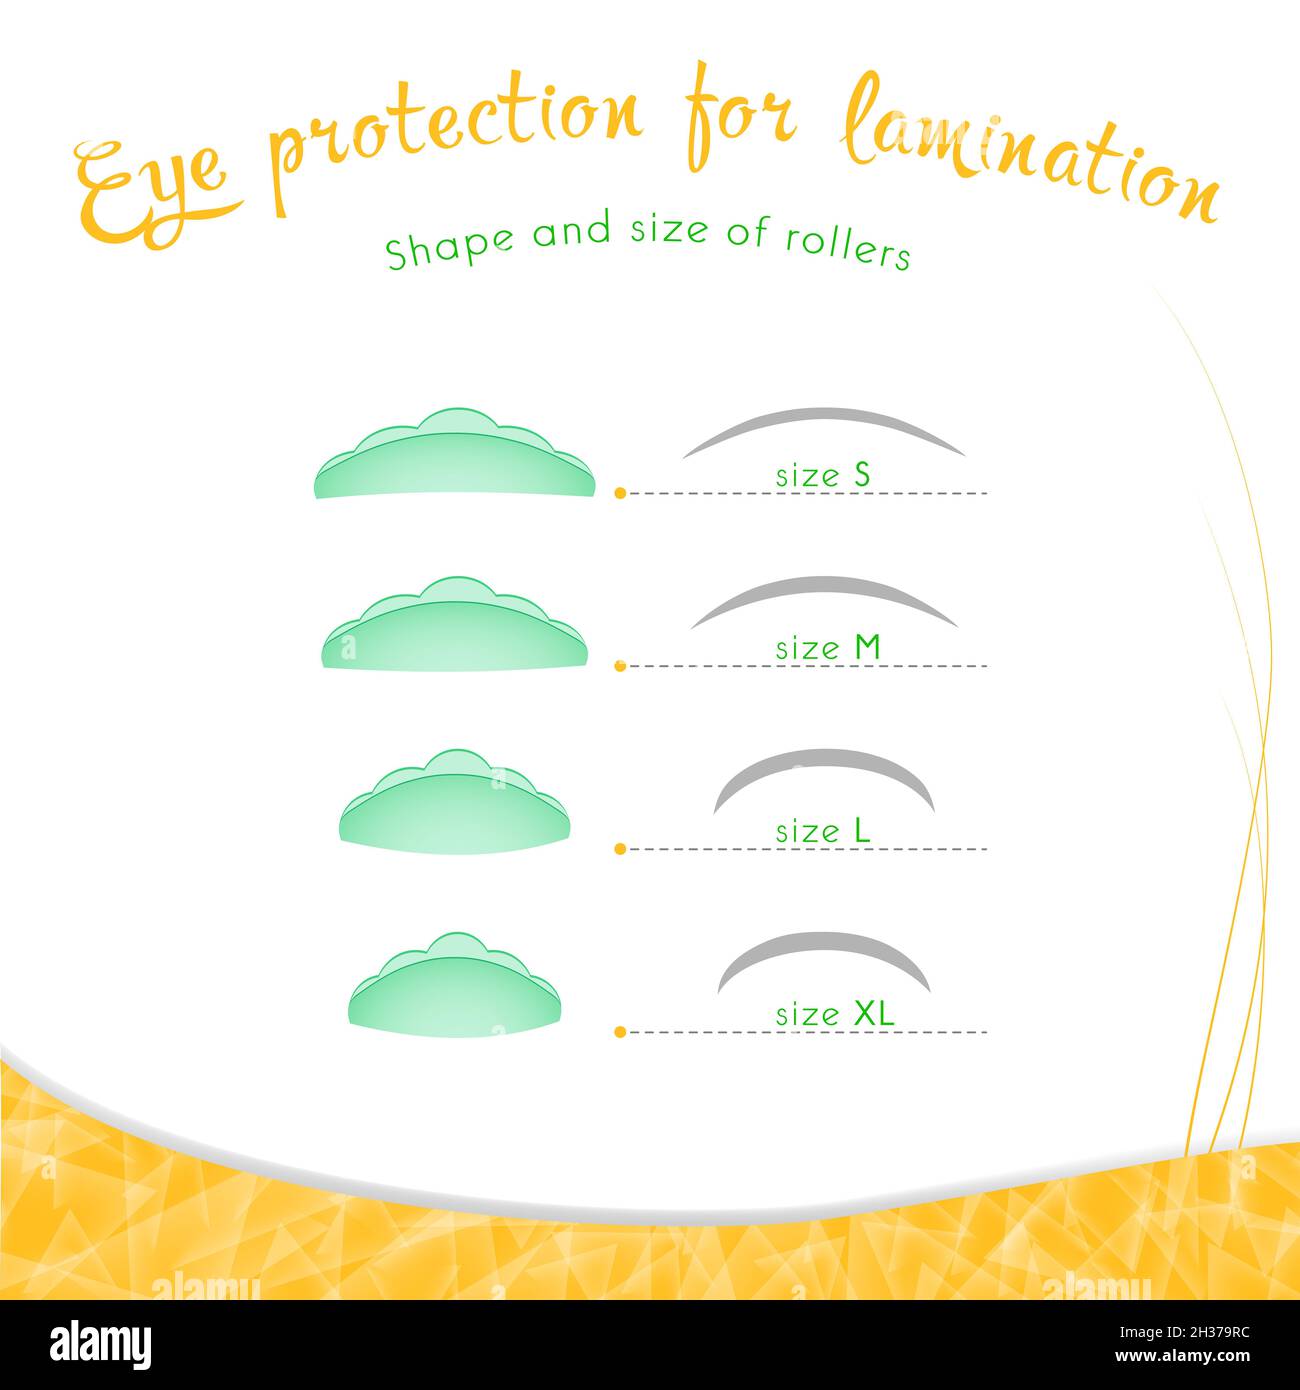 Eye protection for eyelash lamination Stock Photo